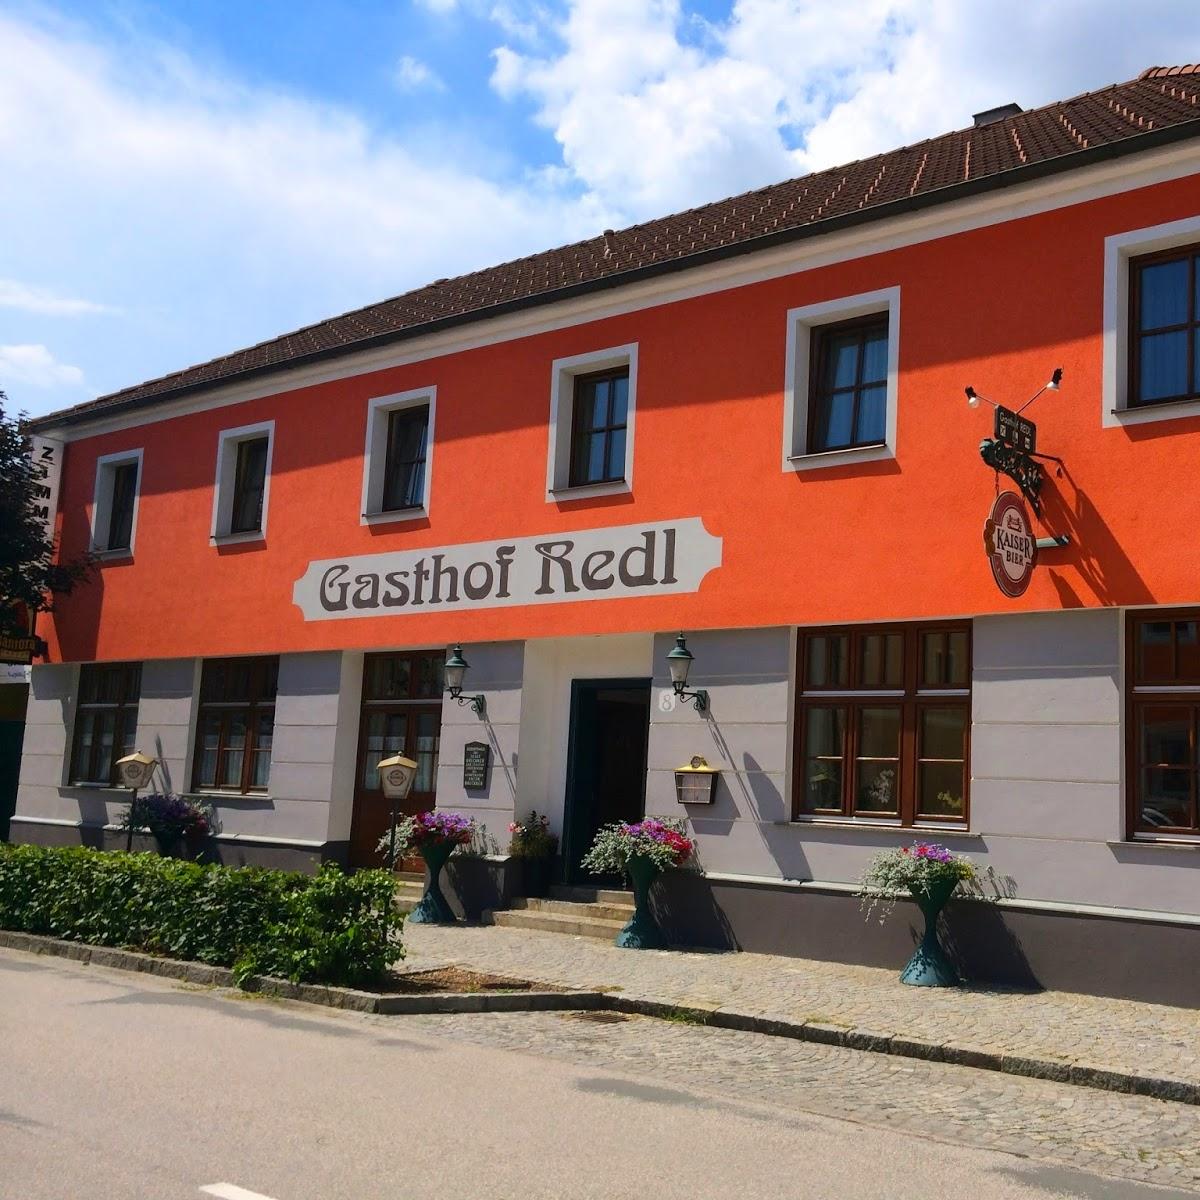 Restaurant "Gasthof Redl" in Oed bei Amstetten